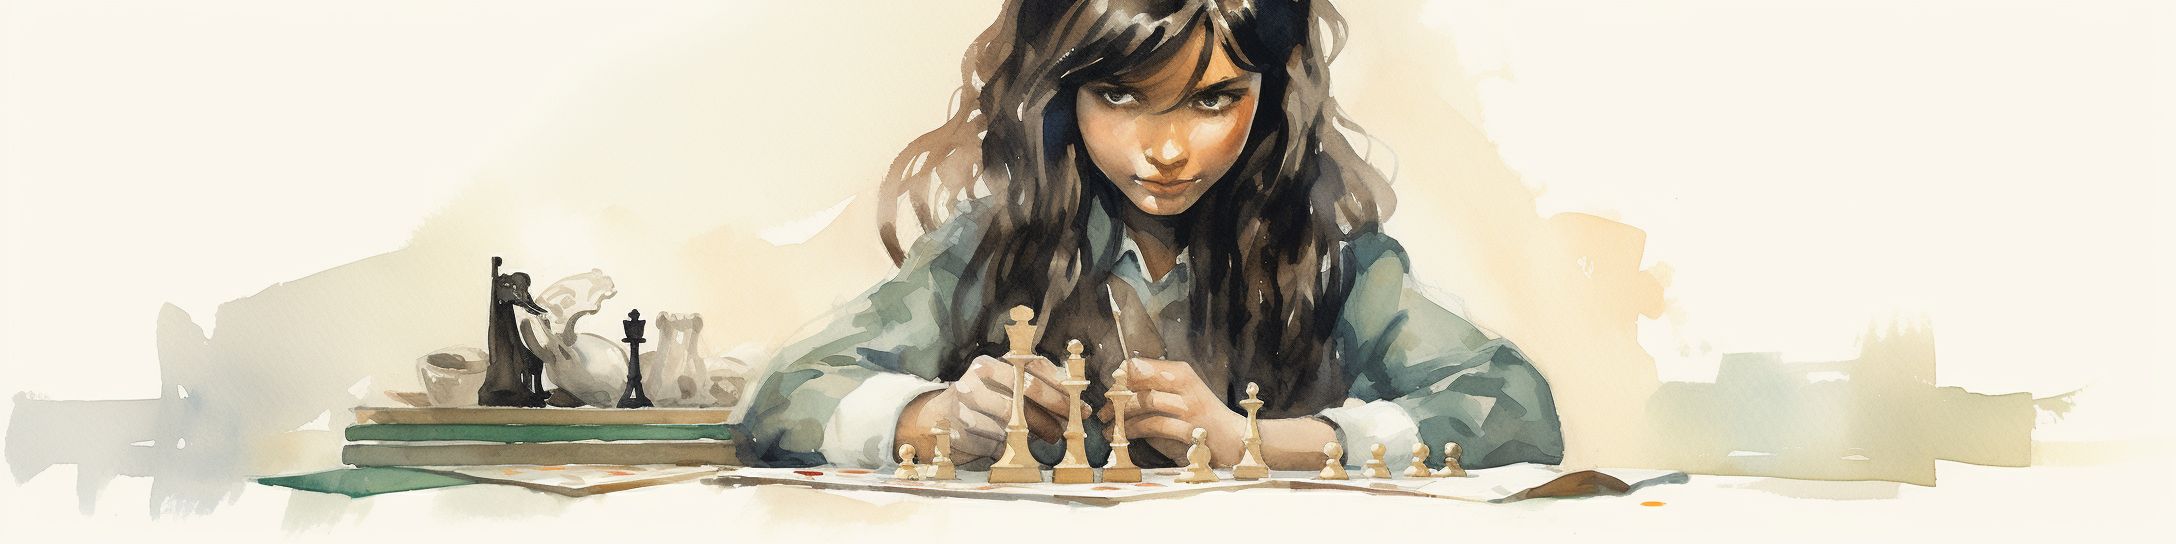 Les prémices dans les échecs pour Pia Cramling